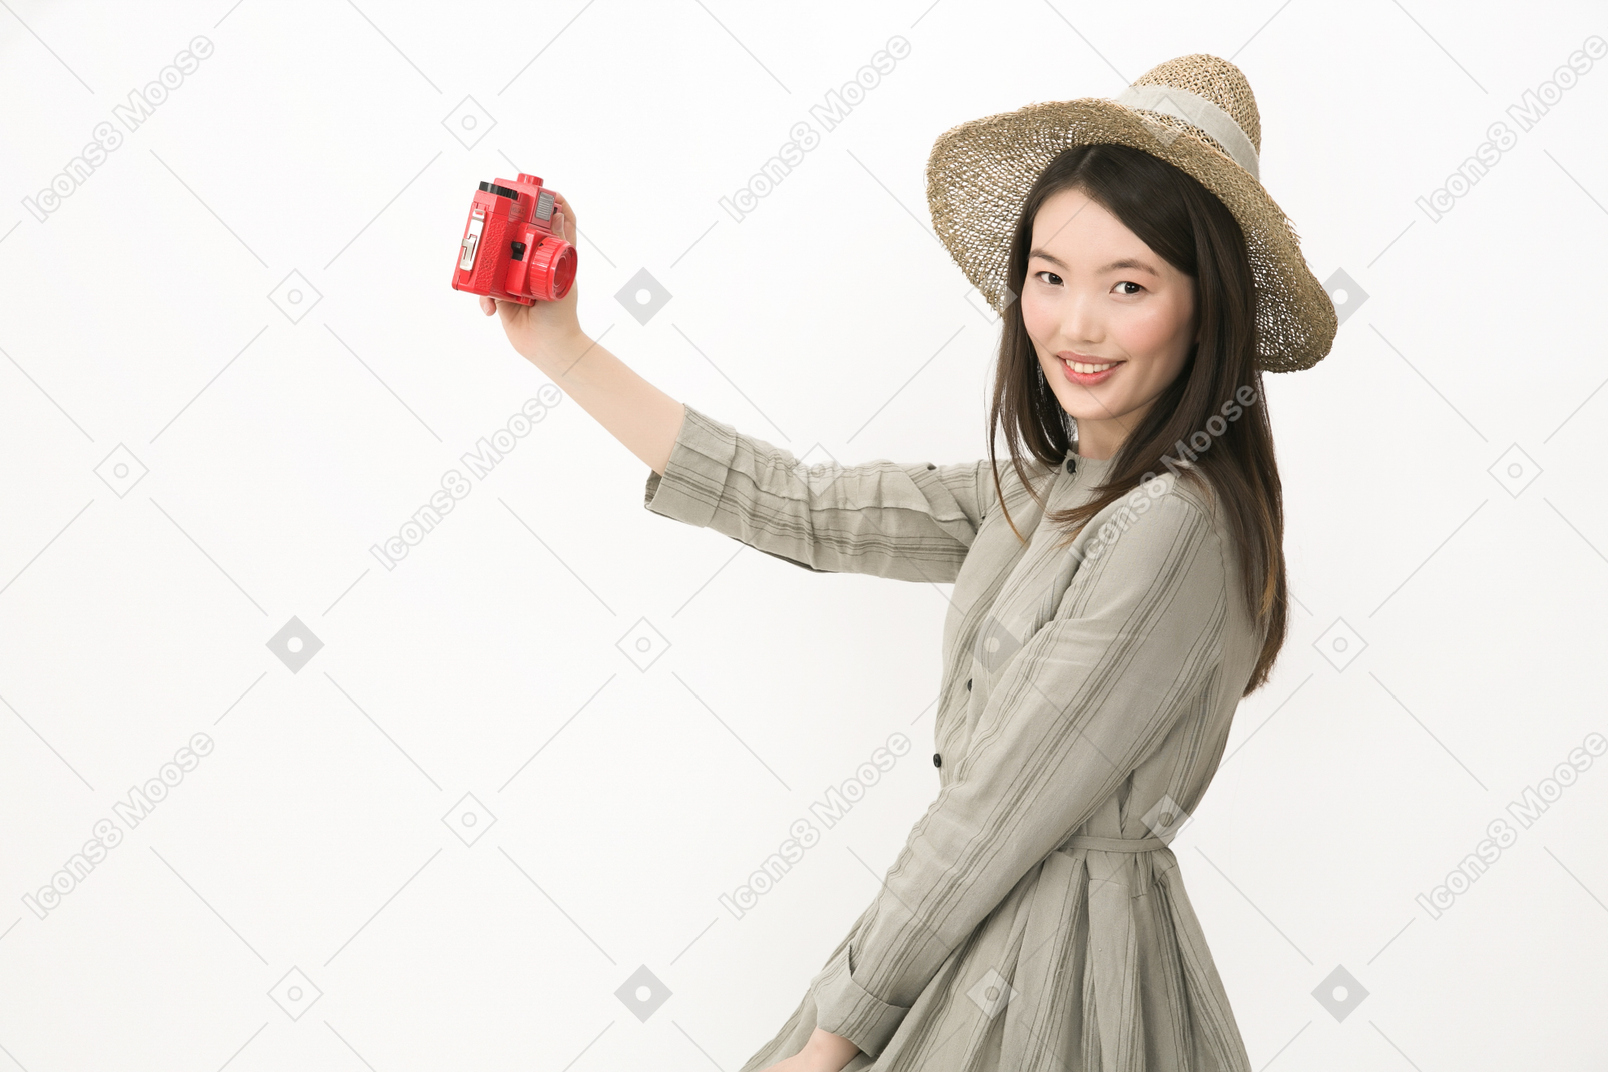 Gir in cappello in piedi di profilo e fare un selfie con telecamera rossa